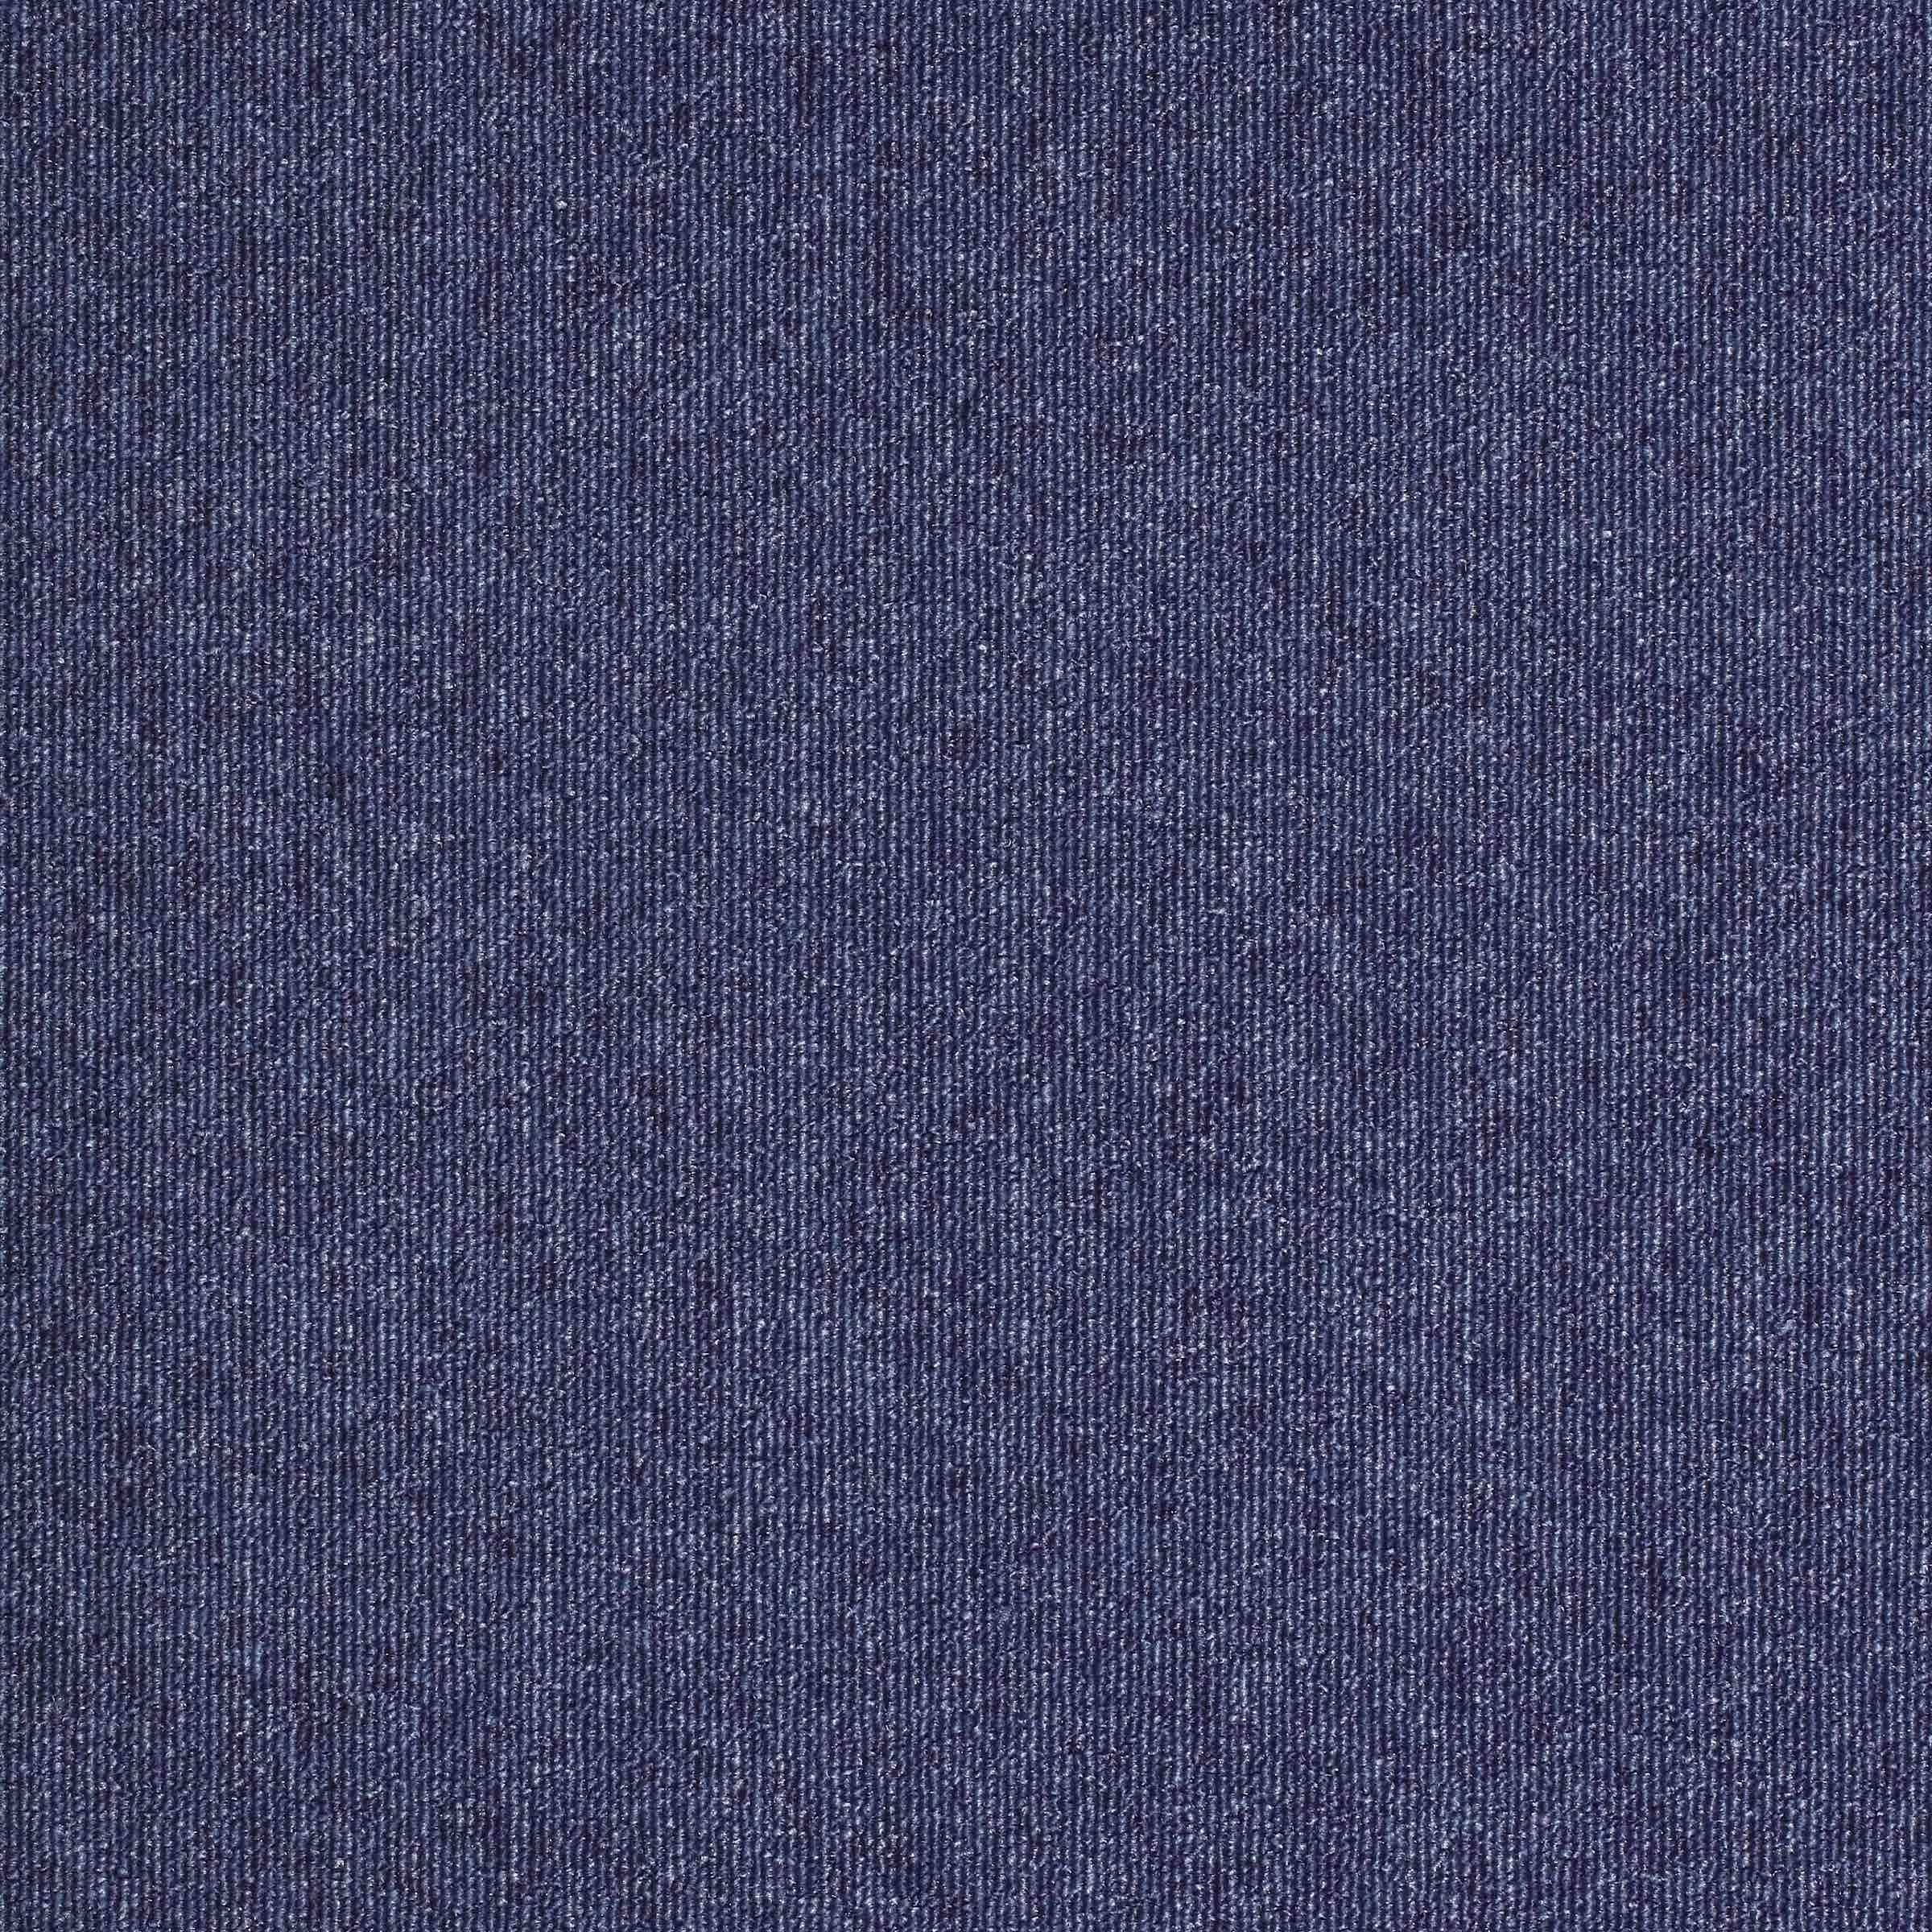 Paragon Sirocco Carpet Tile Blue John